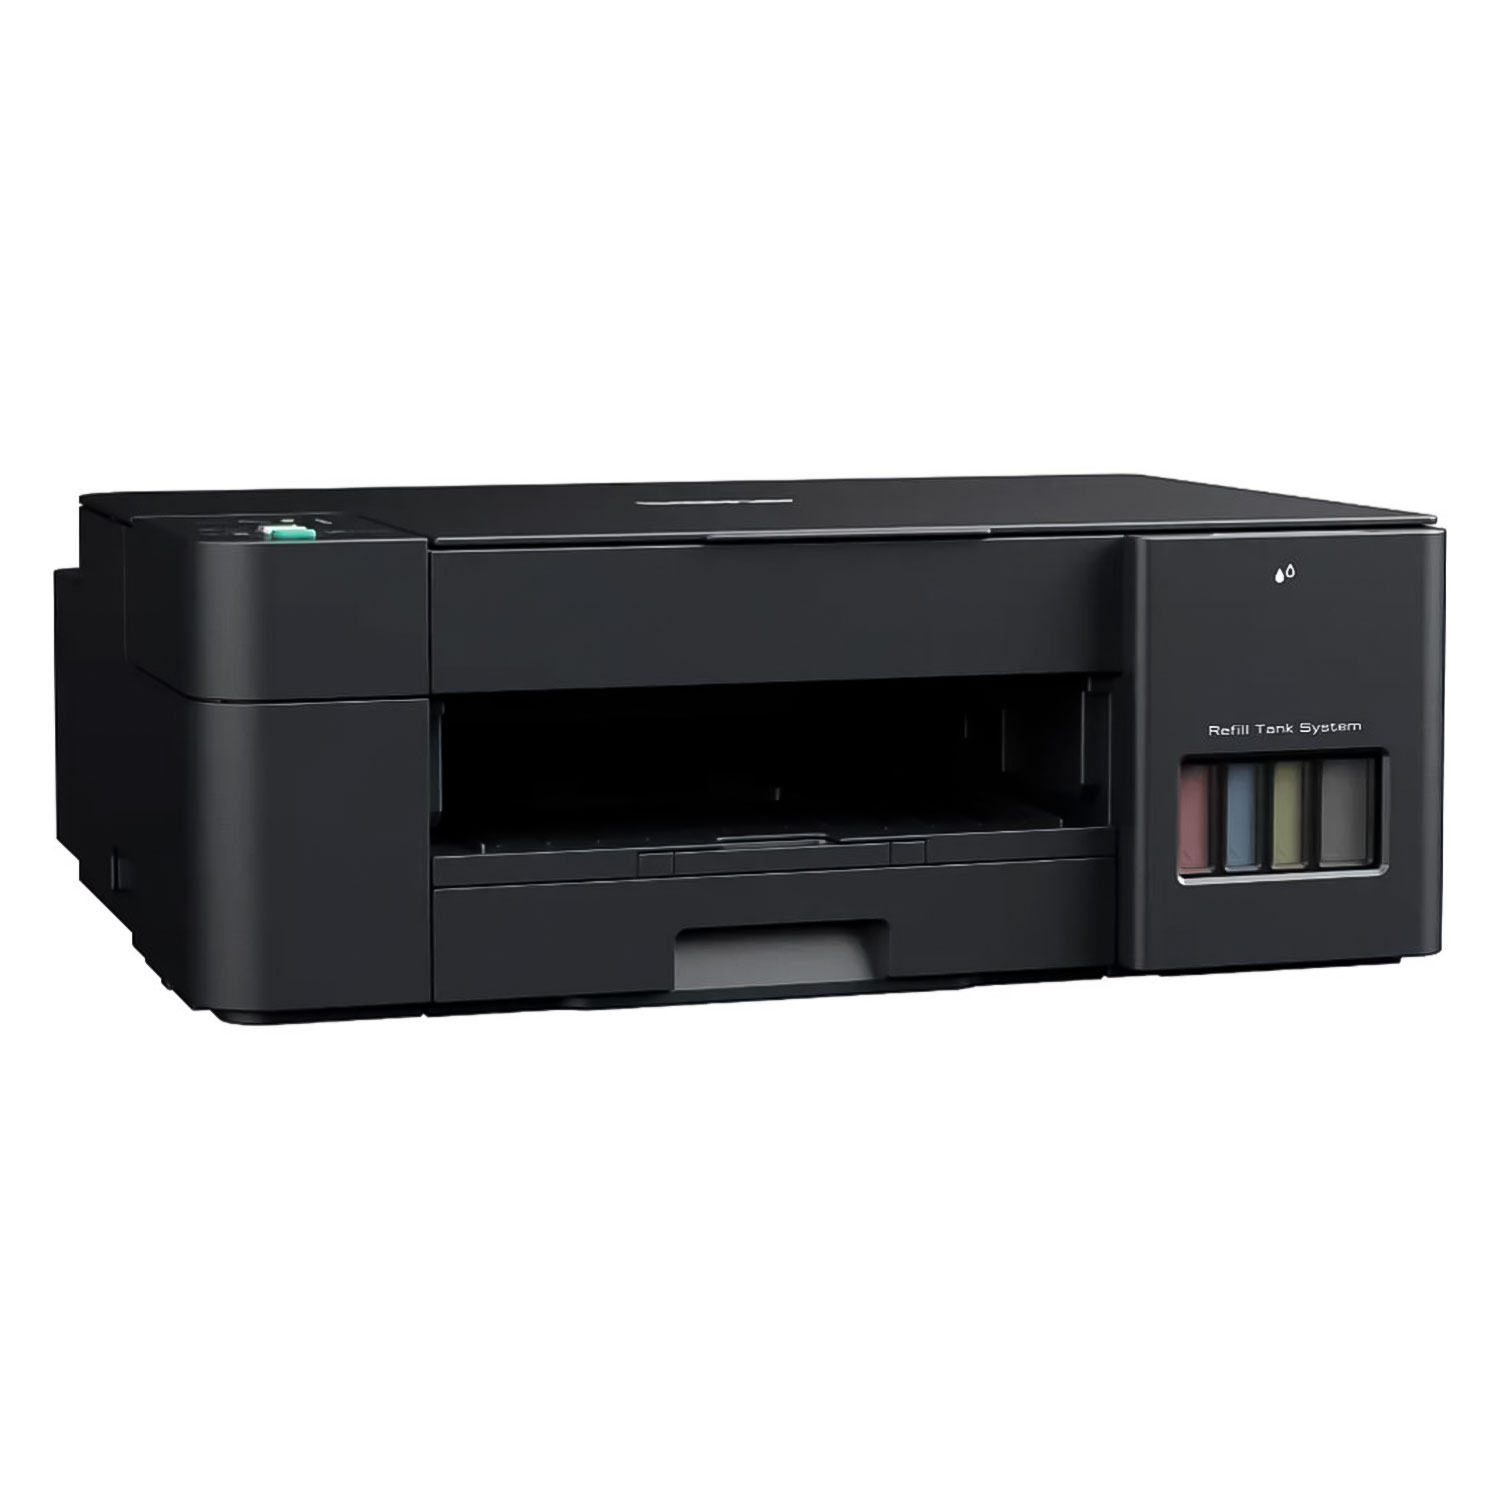 Impressora Multifuncional Brother DCP-T220 220V - Preto
